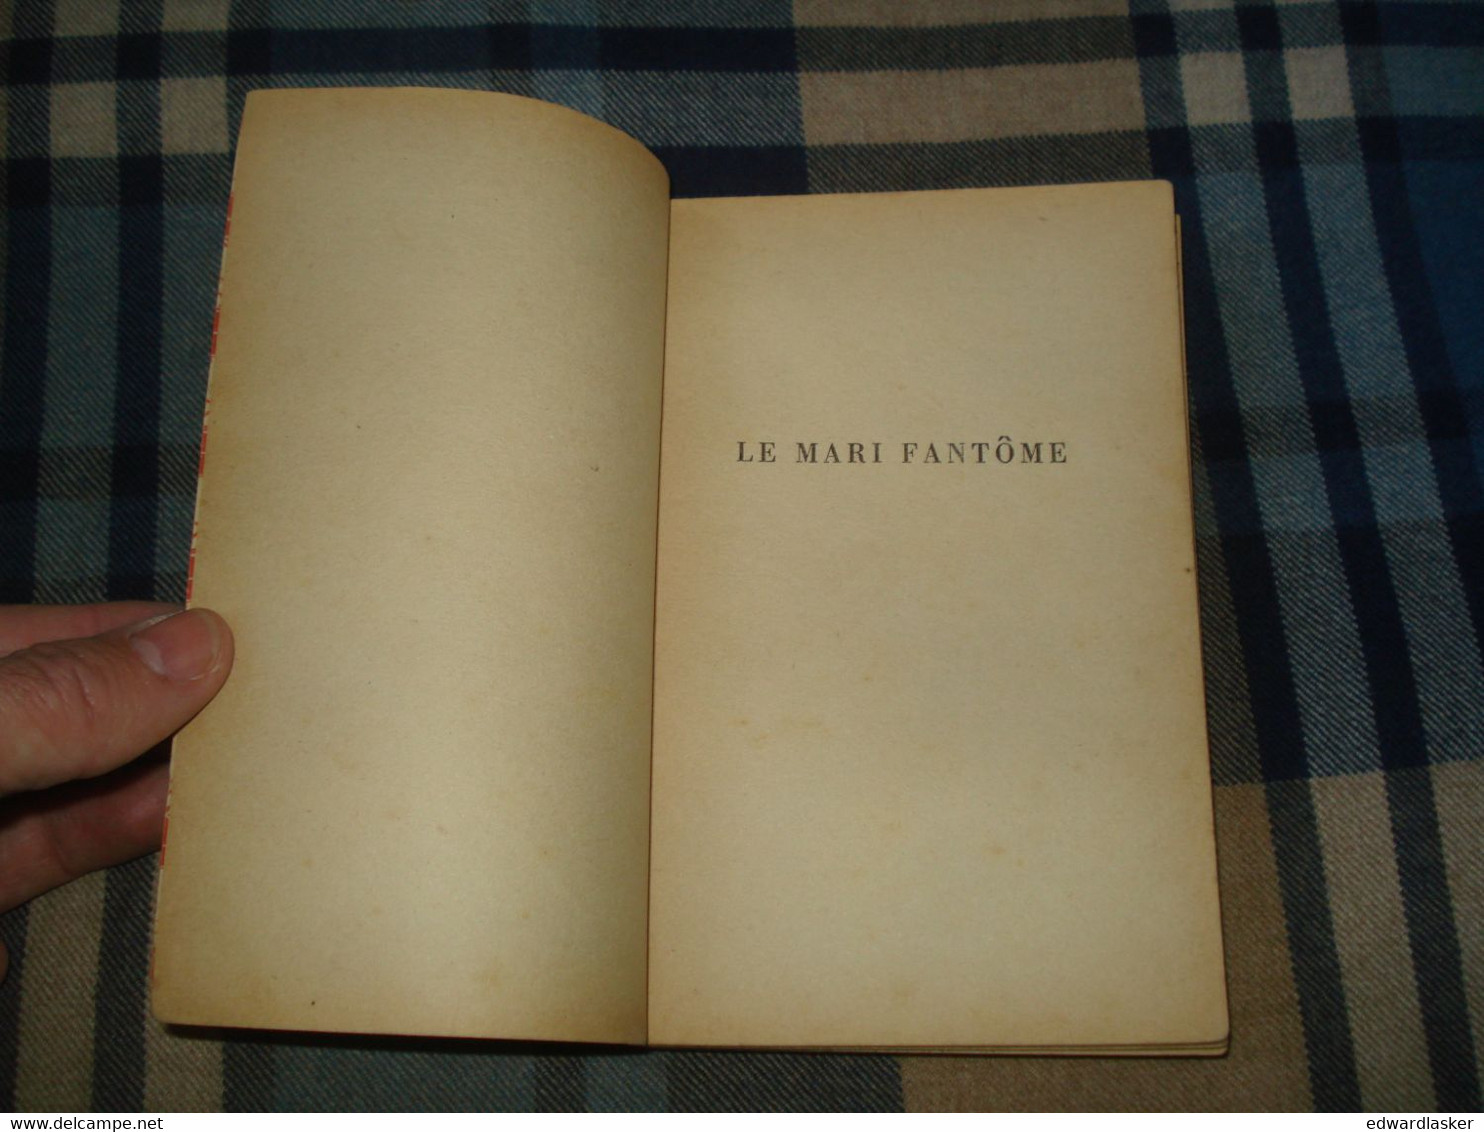 Un MYSTERE N°16 : Le MARI FANTÔME /Erle Stanley GARDNER - Février 1950 - Presses De La Cité